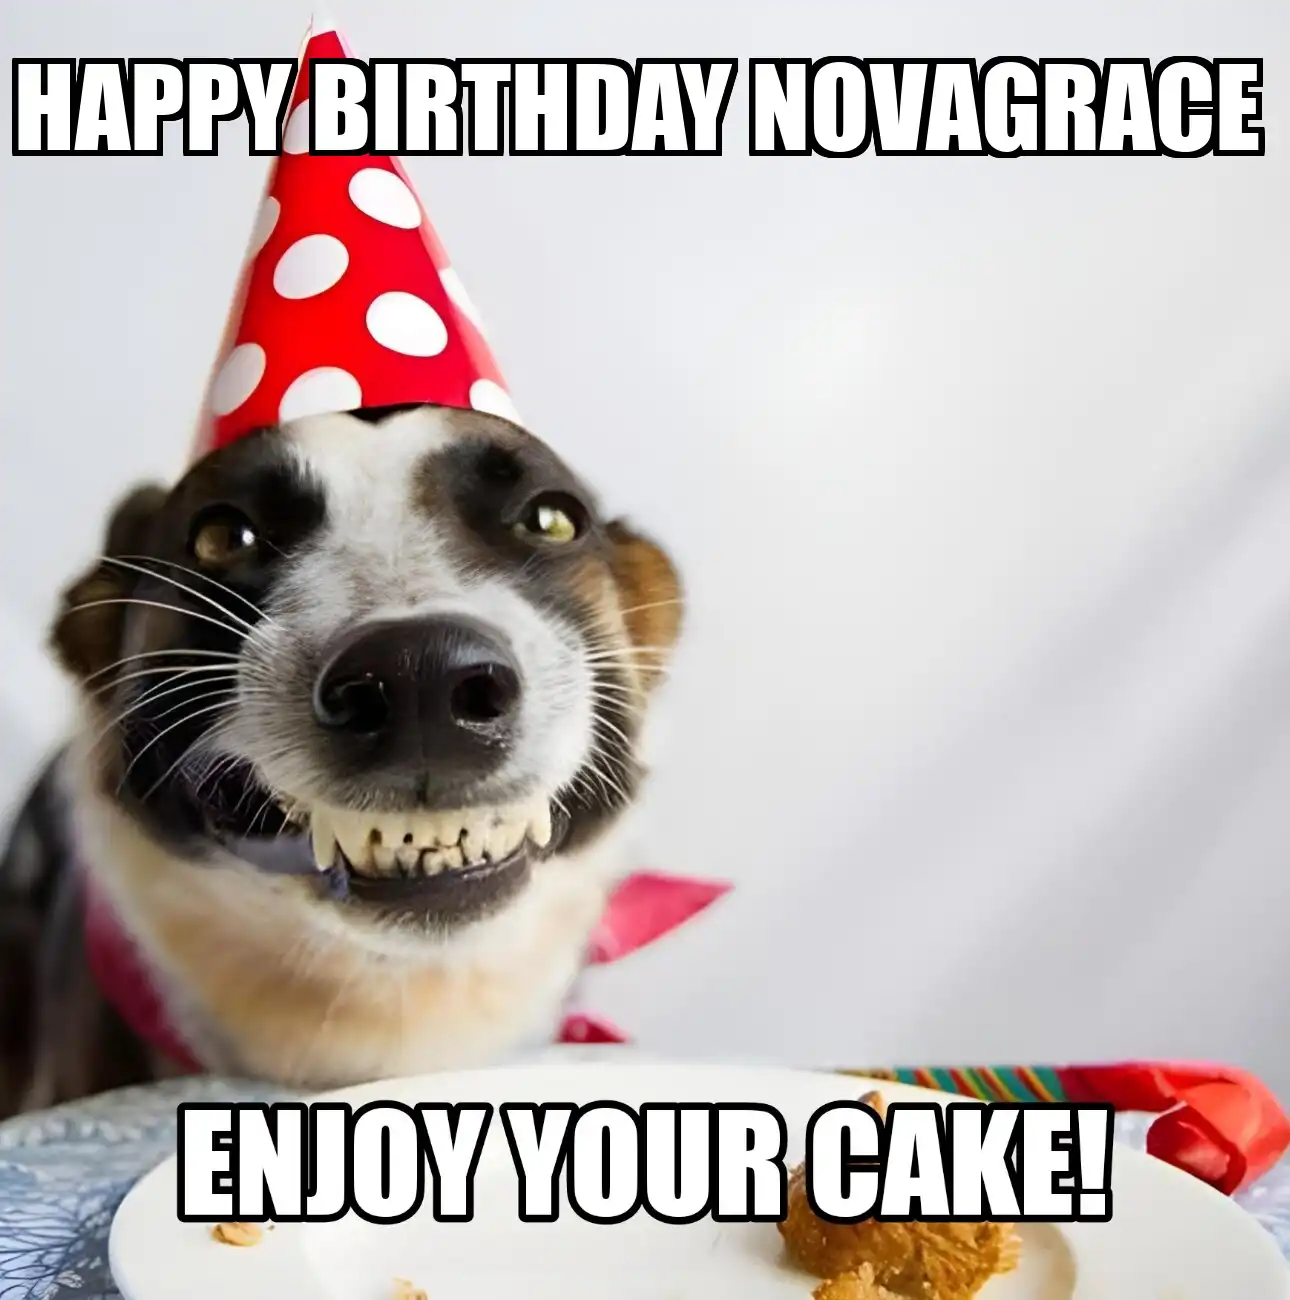 Happy Birthday Novagrace Enjoy Your Cake Dog Meme